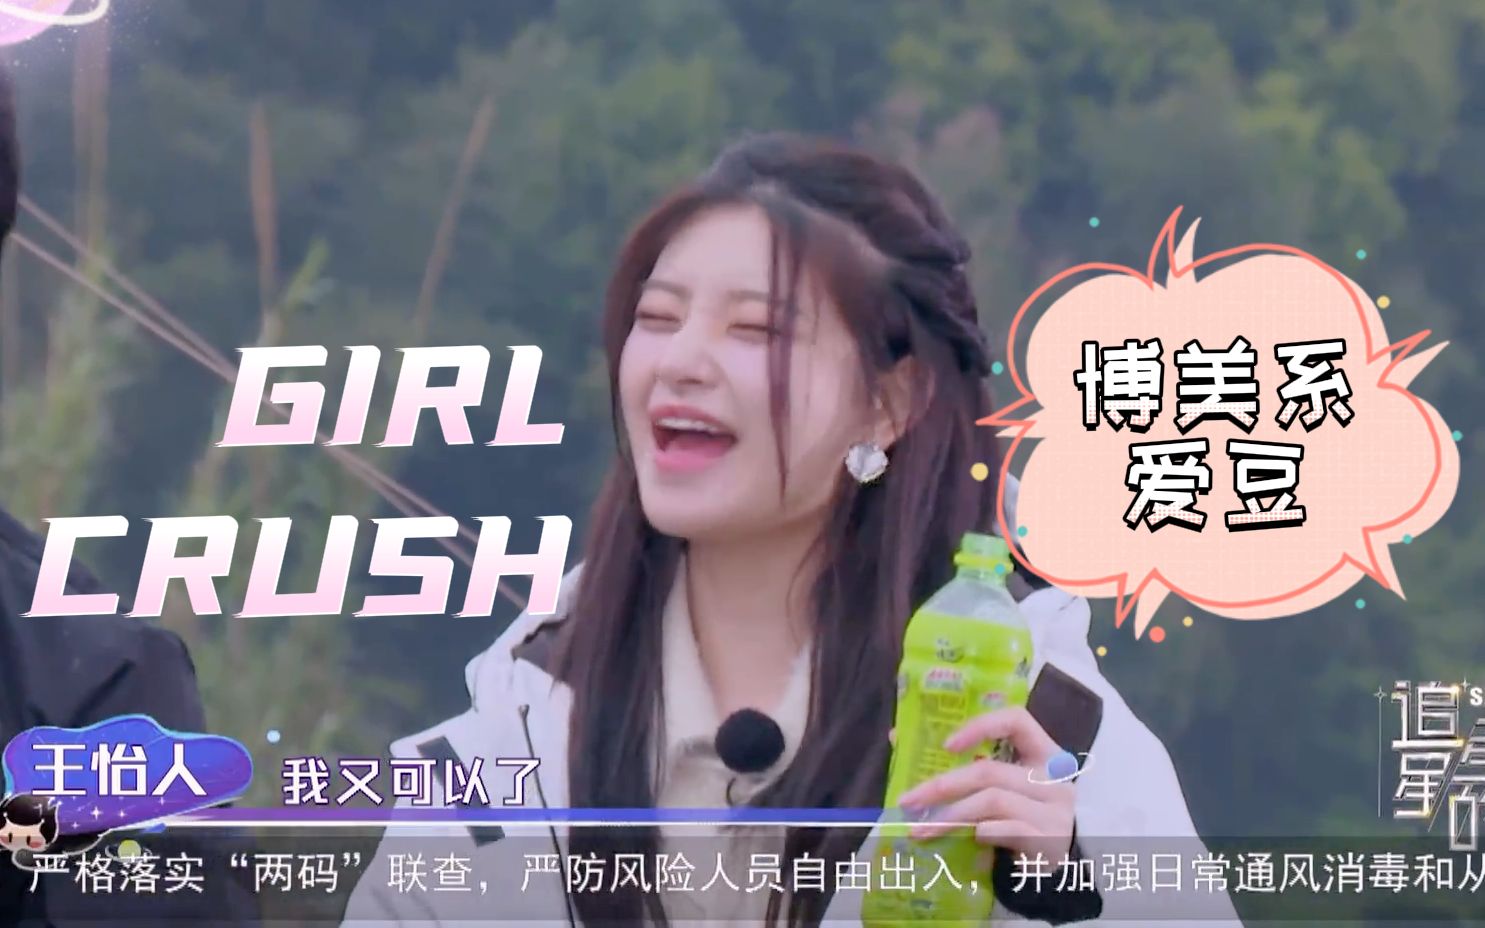 这就是girl crush?! 来自杭州囡囡王怡人的反转魅力